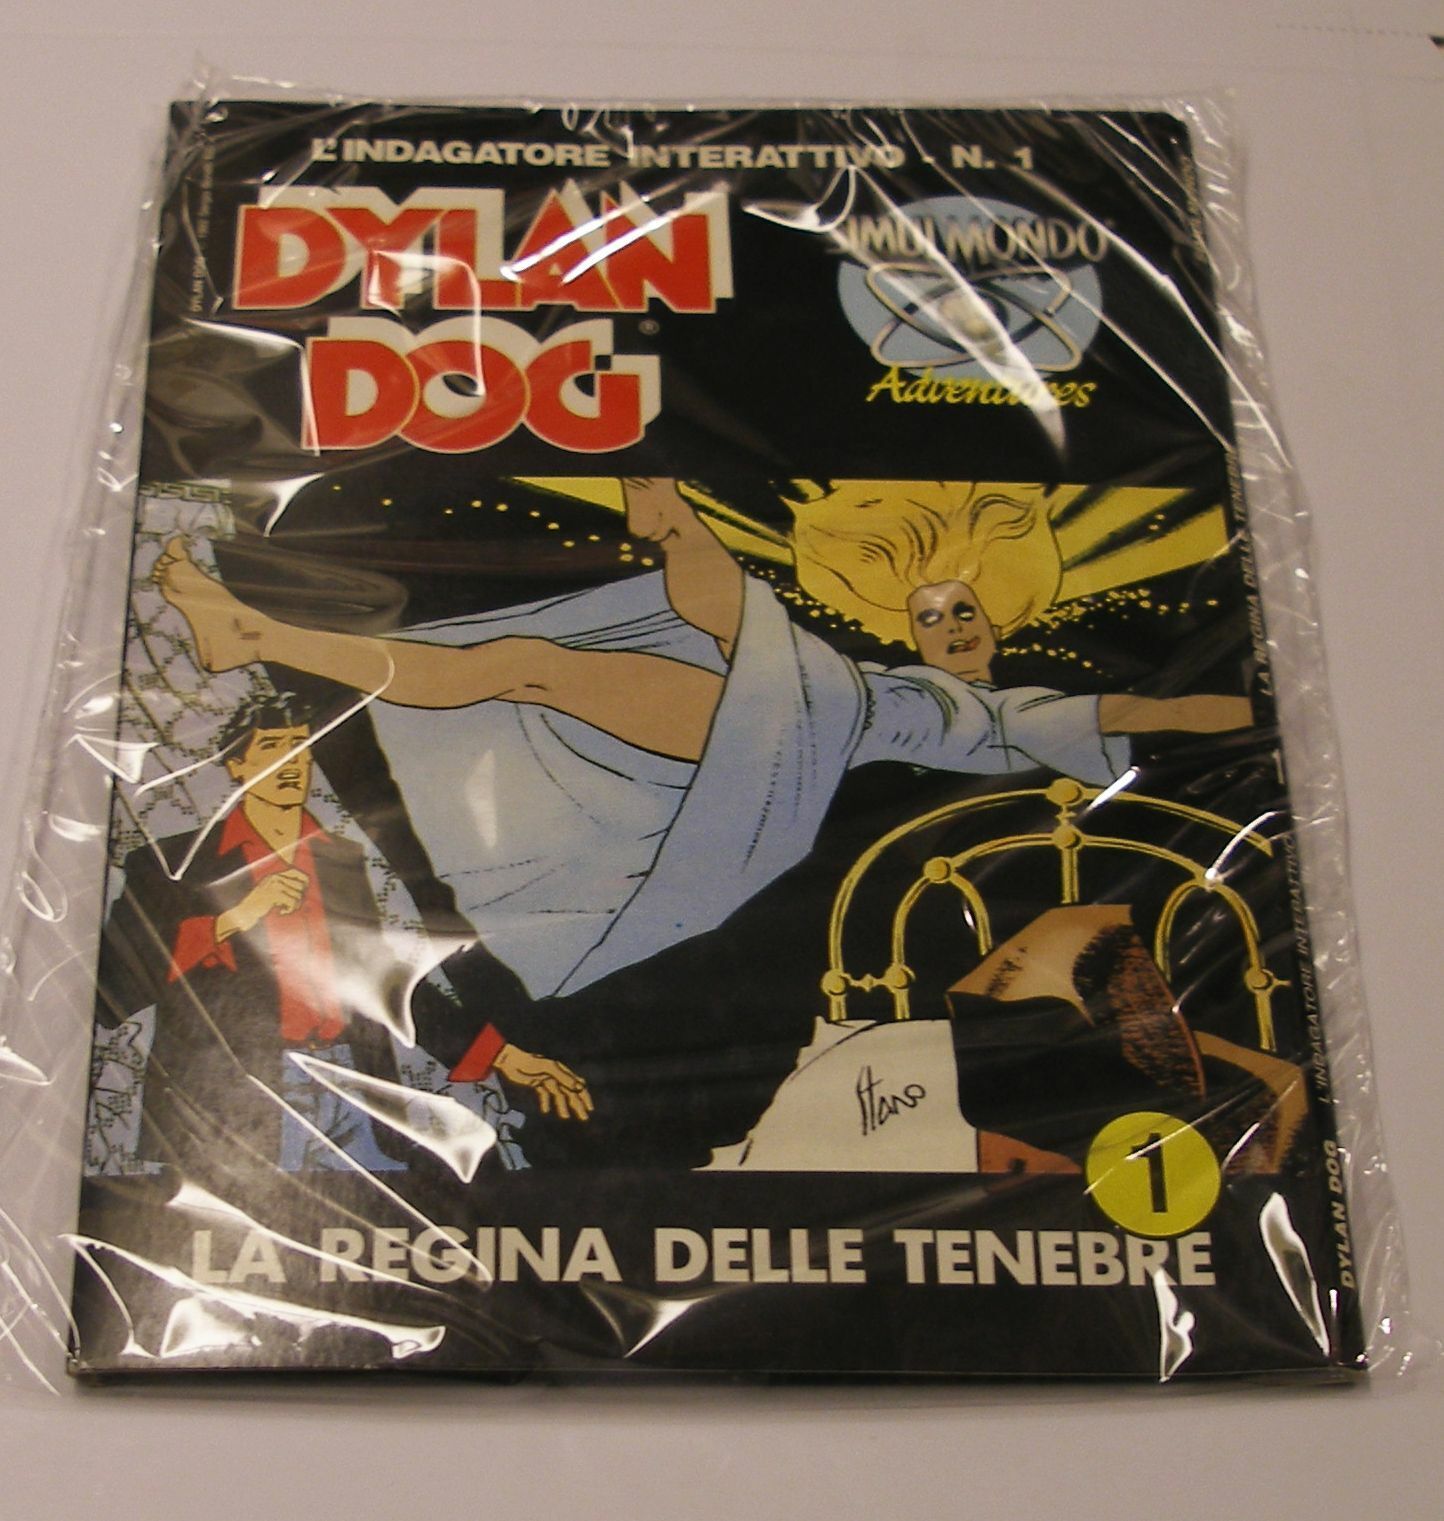 VERY RARE: Dylan Dog 01: La Regina delle Tenebre by Simulmondo for Amiga -NEW